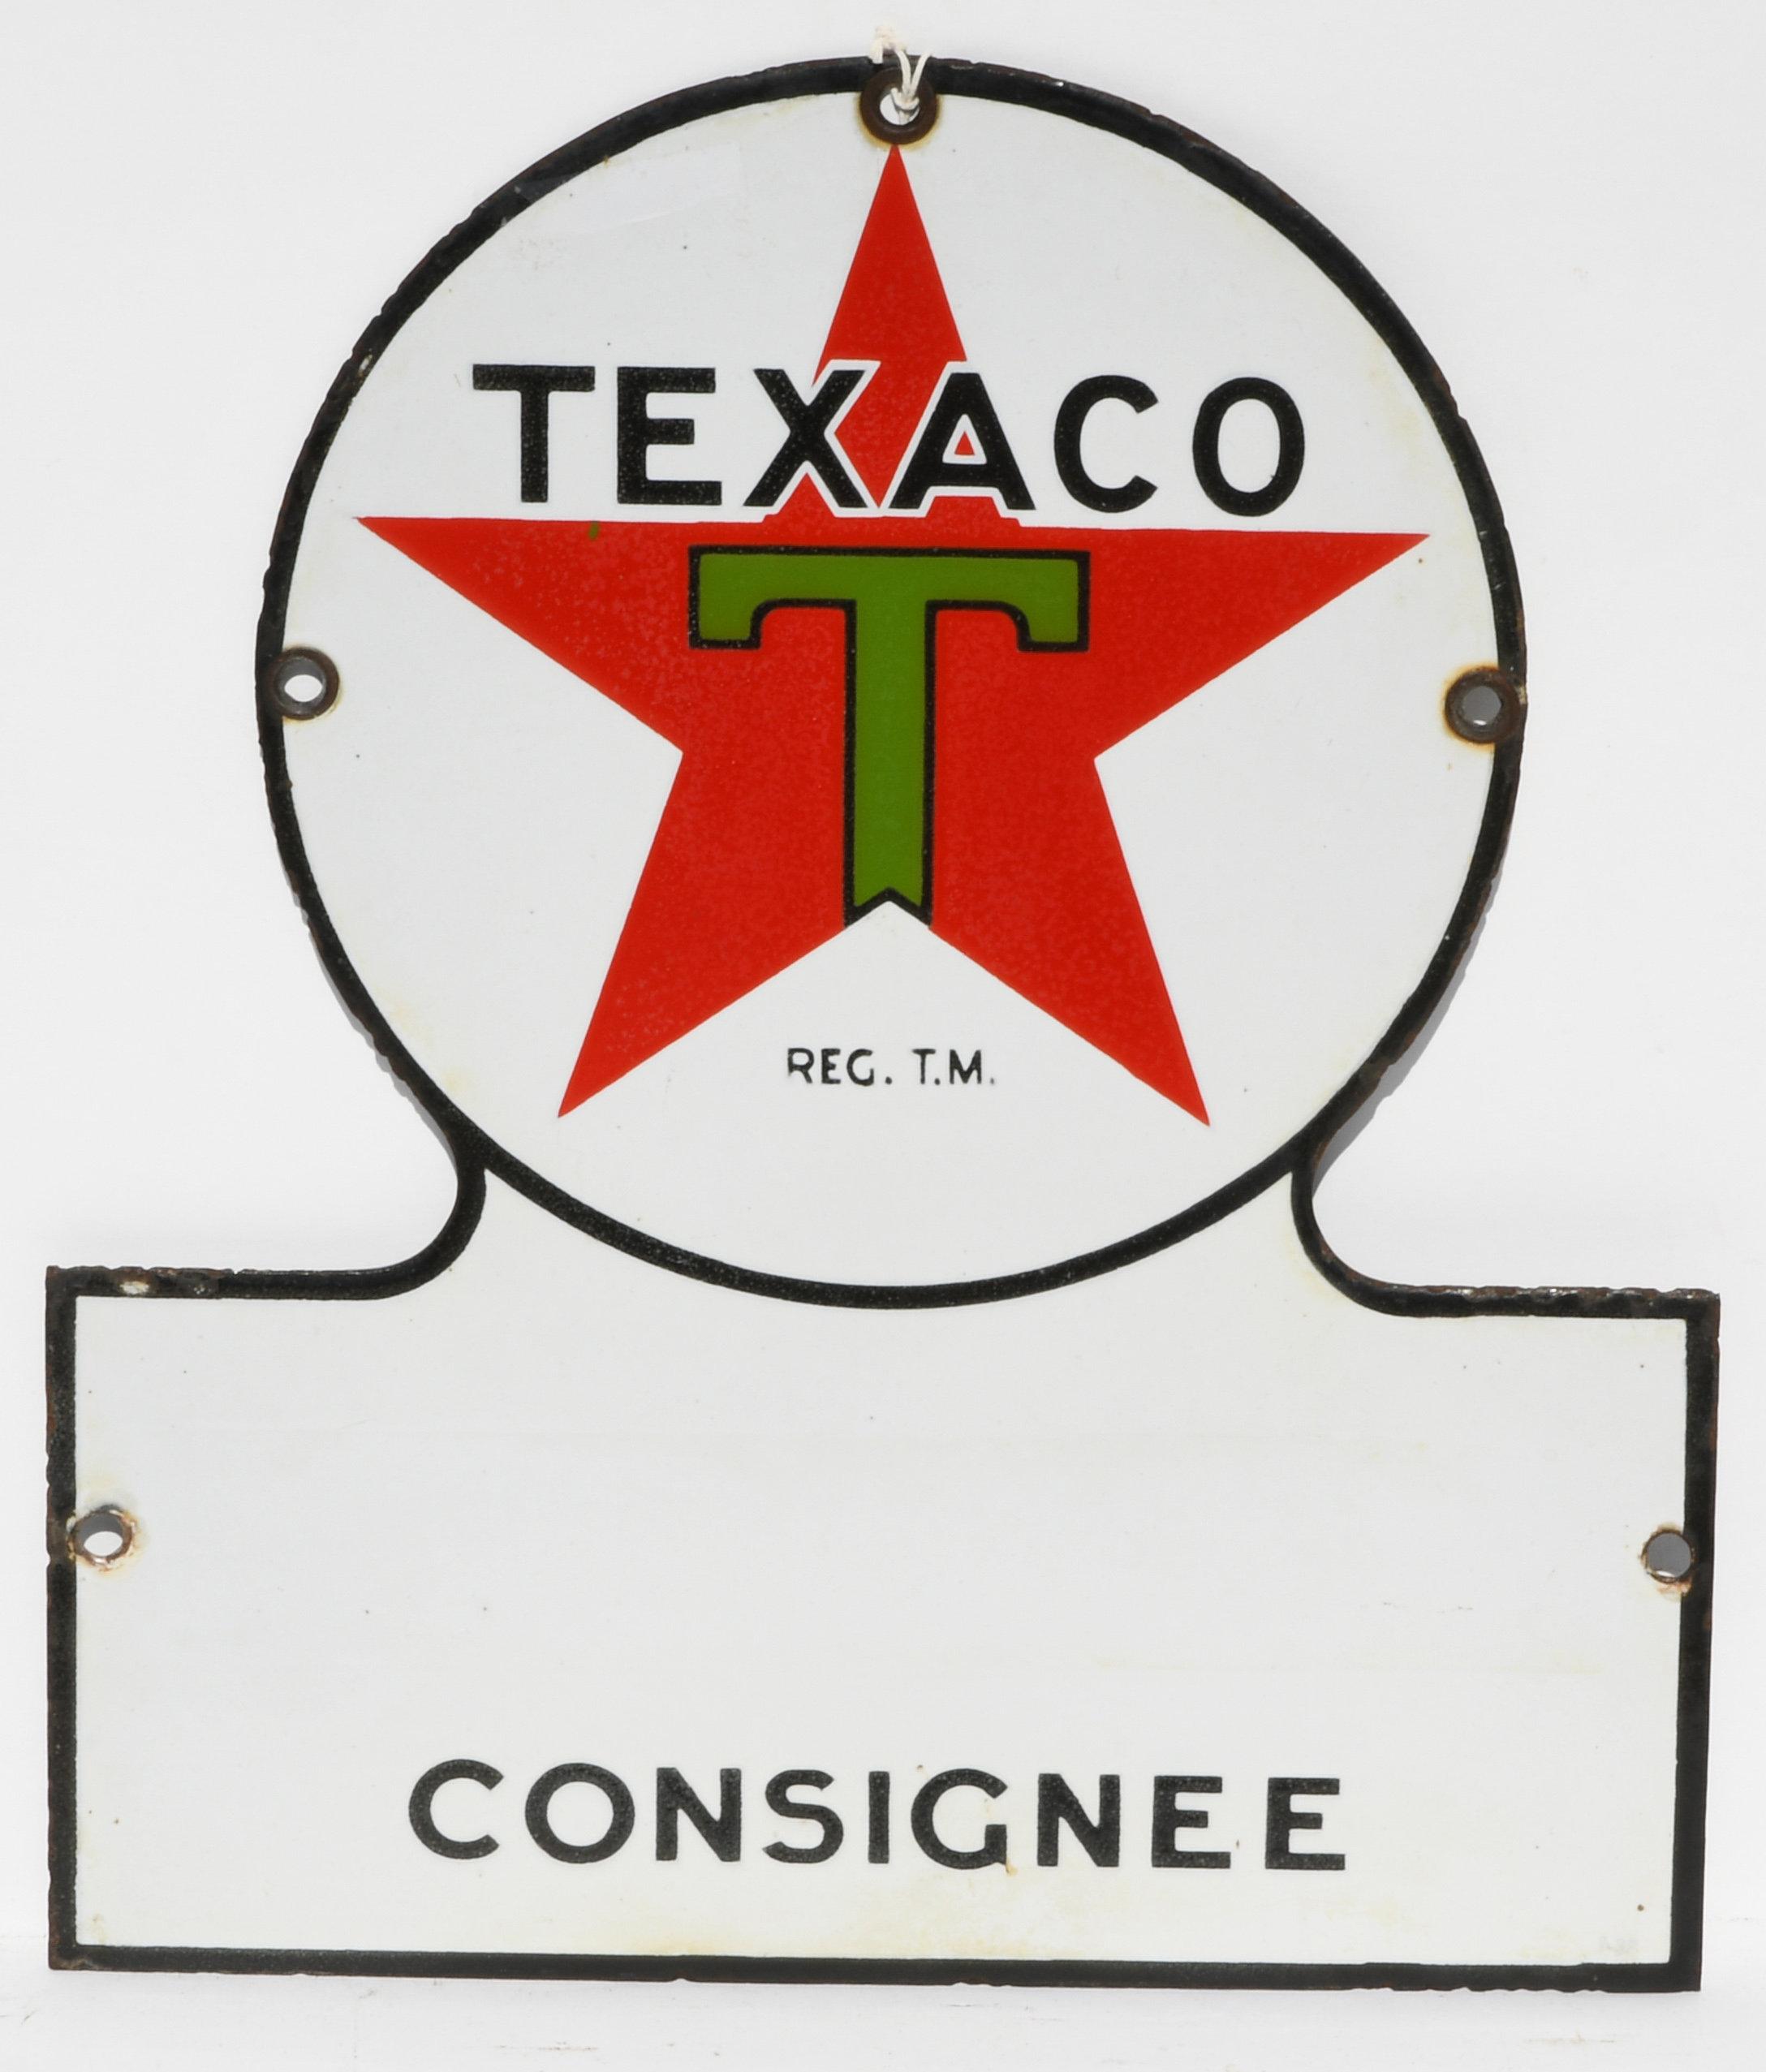 Texaco Consignee Keyhole Porcelain Sign